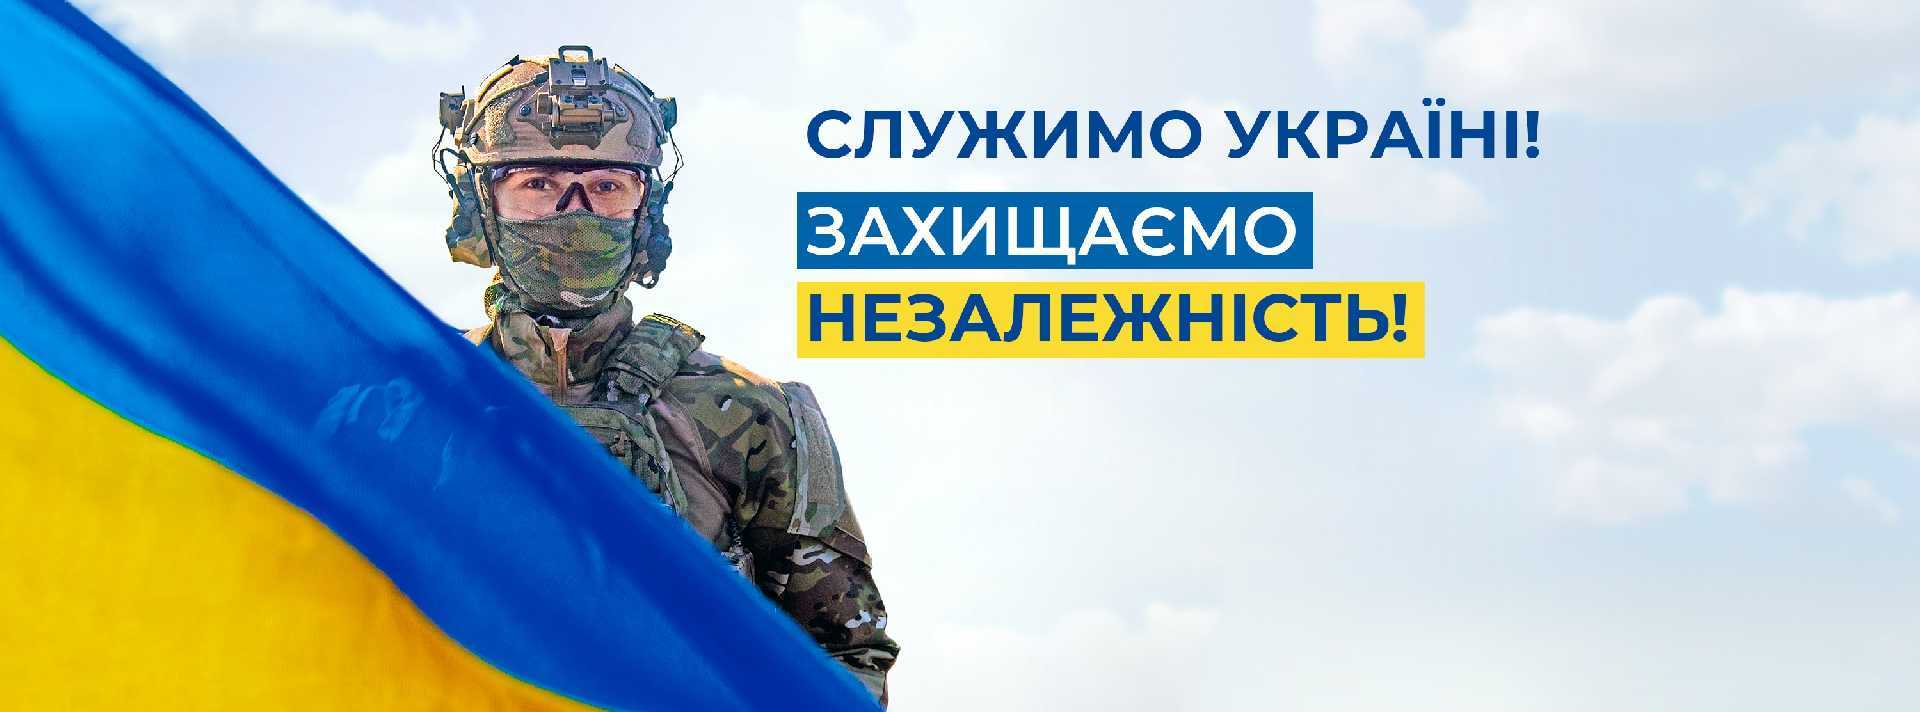 ОФІЦІЙНА ЗАЯВА СБУ.  Сьогоднішні події на тимчасово окупованій території України є черговим витком гібридної війни проти нашої держави.